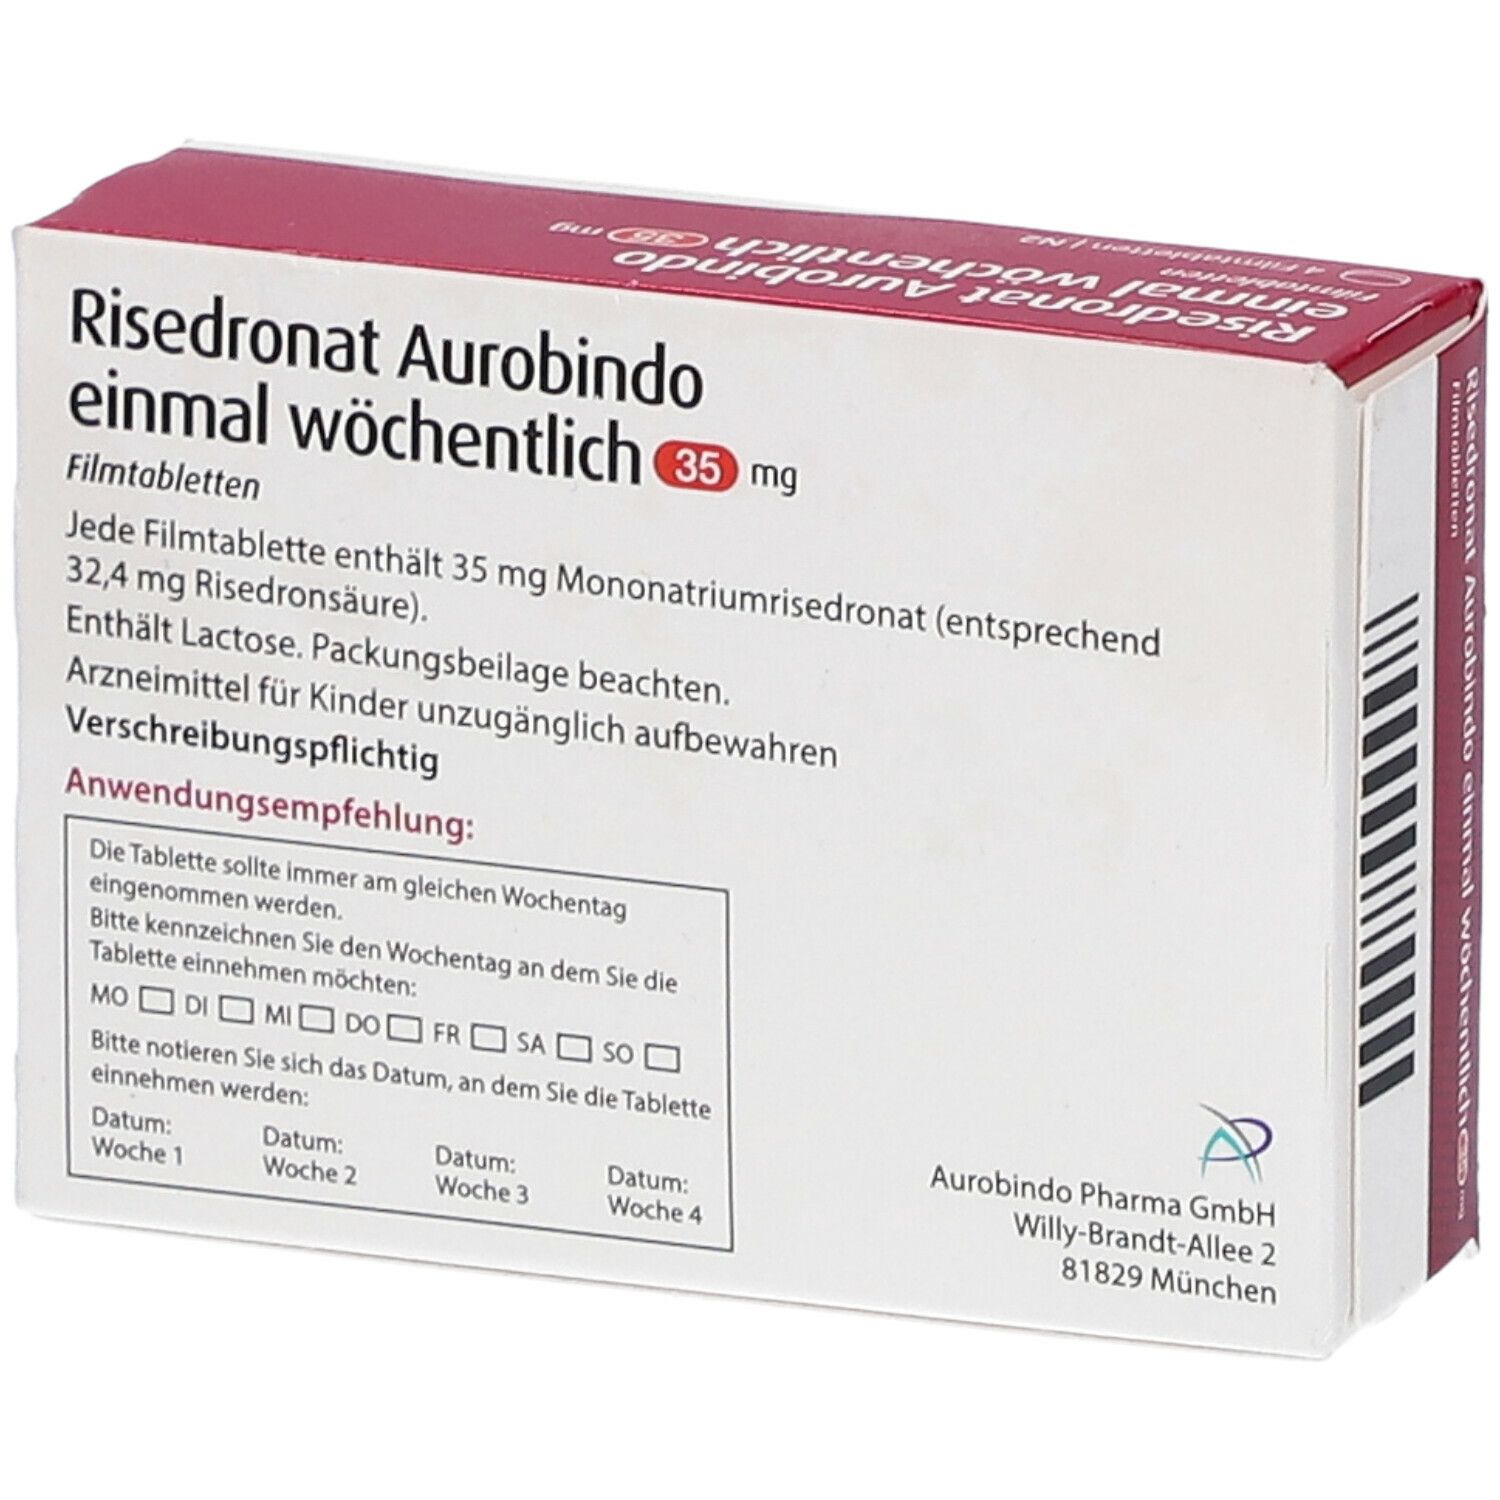 Risedronat Aurobindo einmal wöchentlich 35 mg